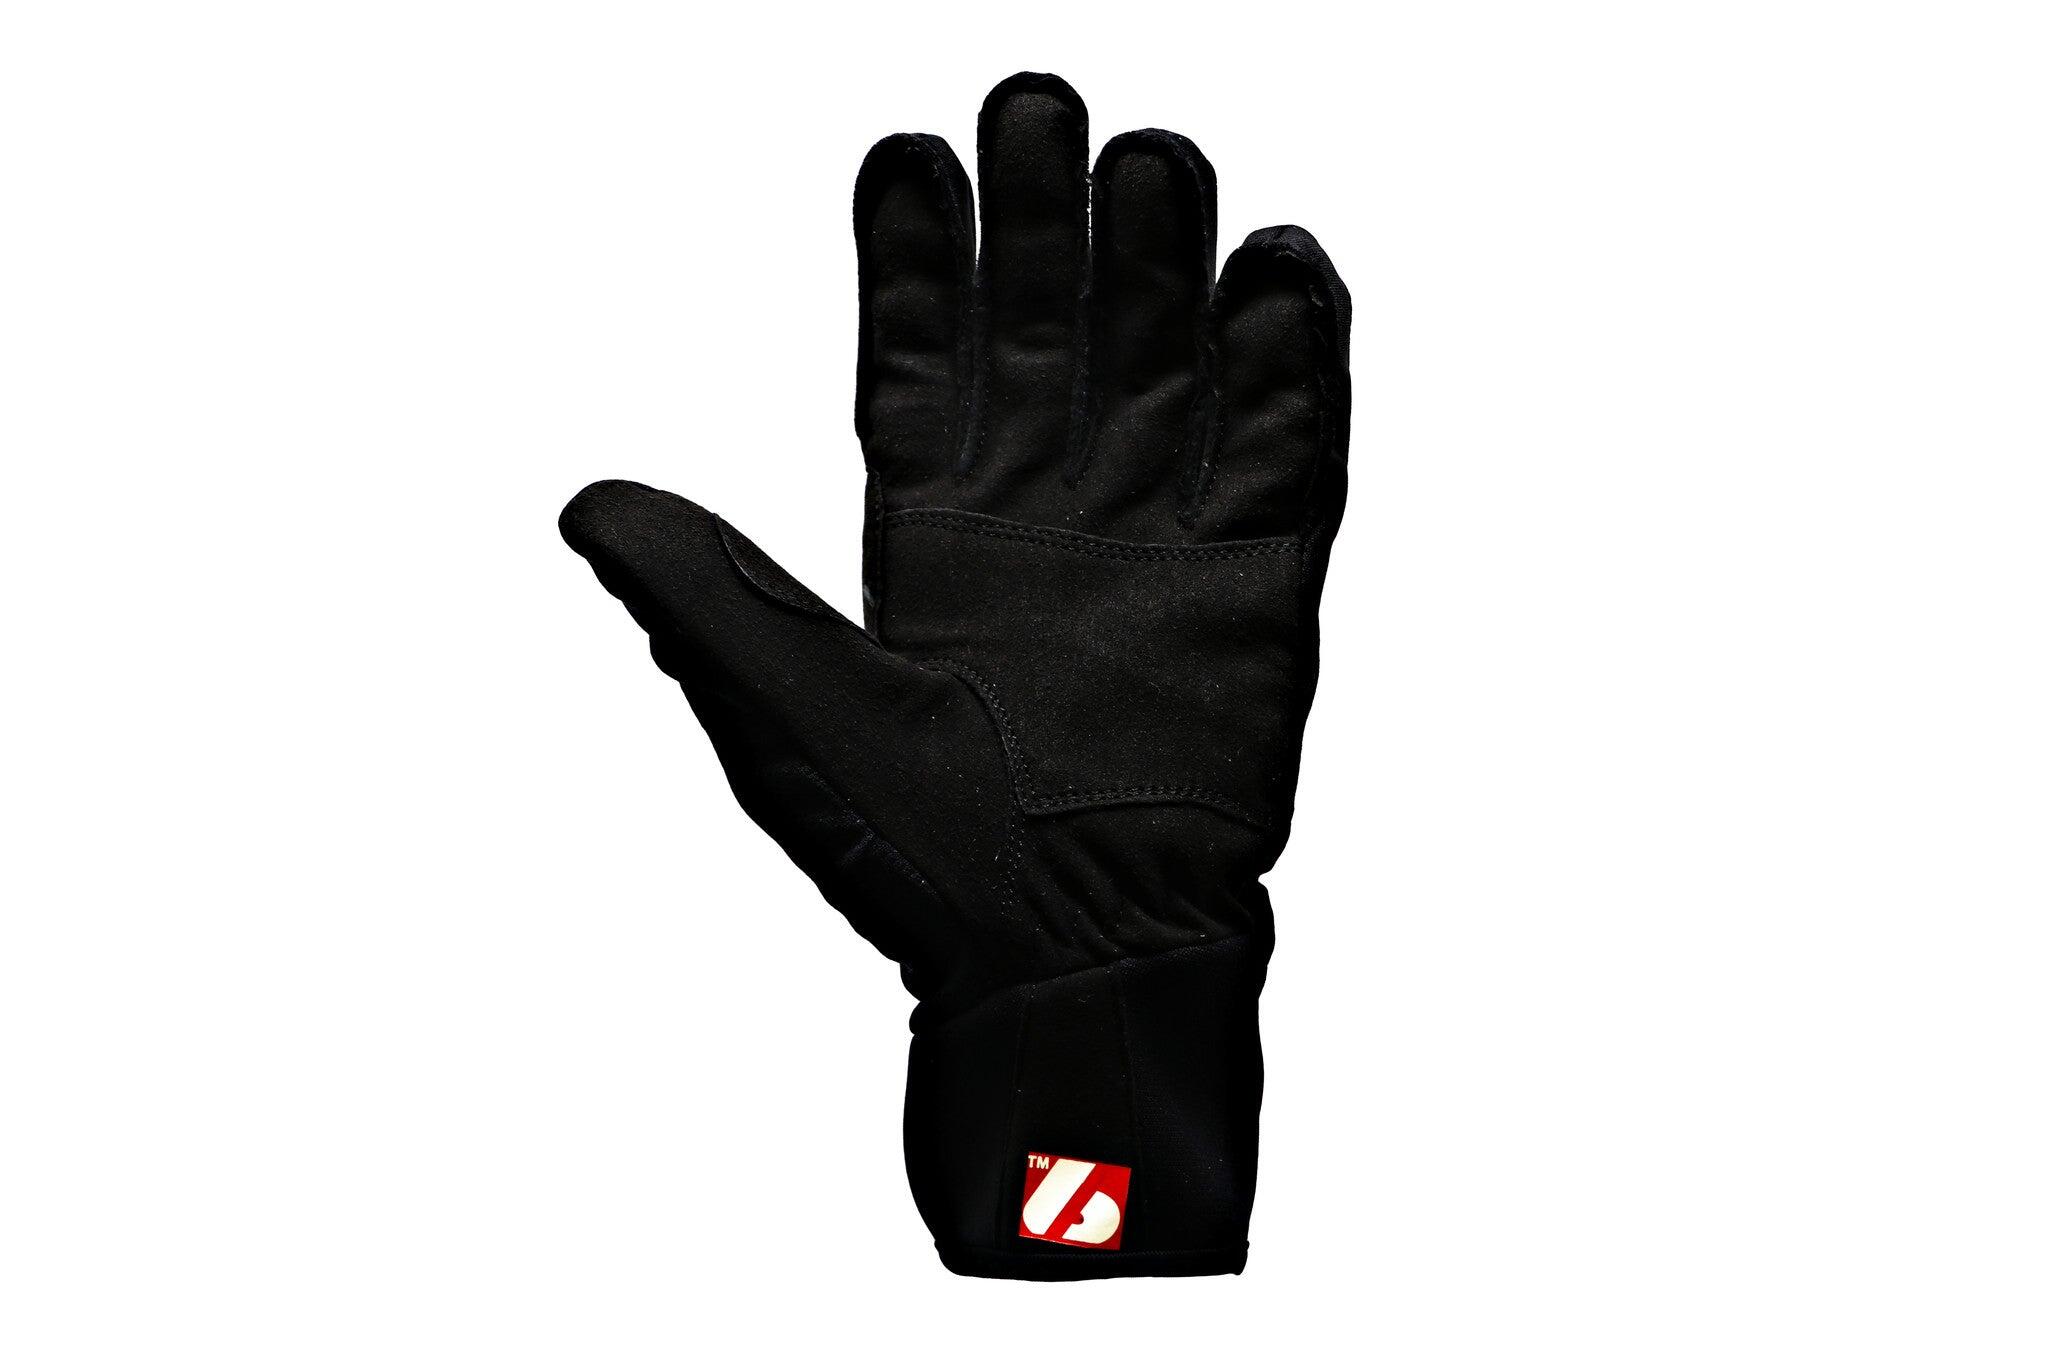  NBG-03 cross-country ski gloves 3/5